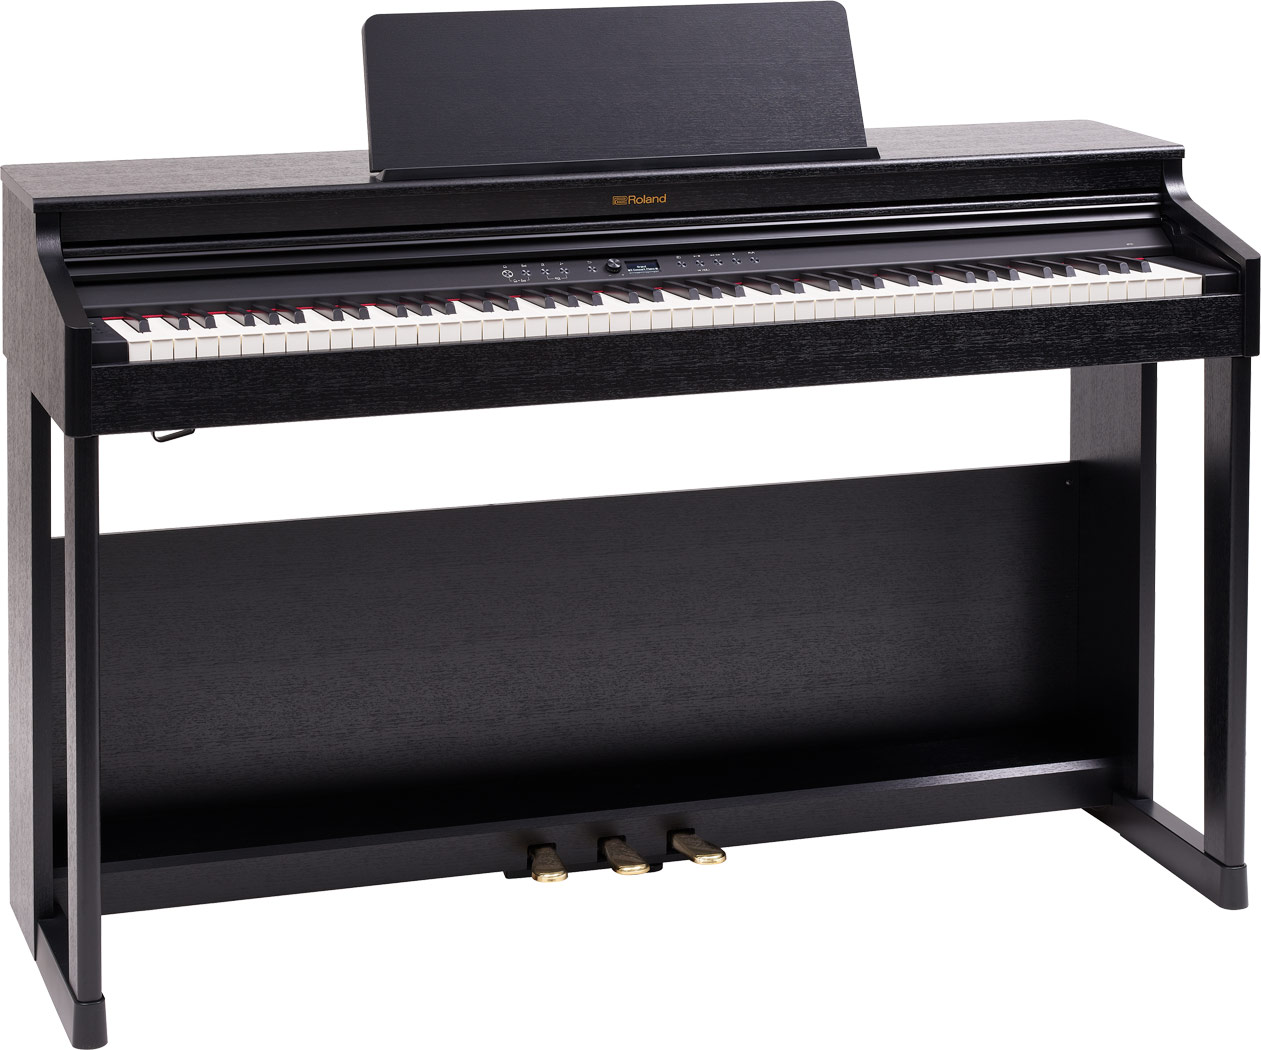 Roland RP701 CB Home Set Digital Piano - Contemporary Black